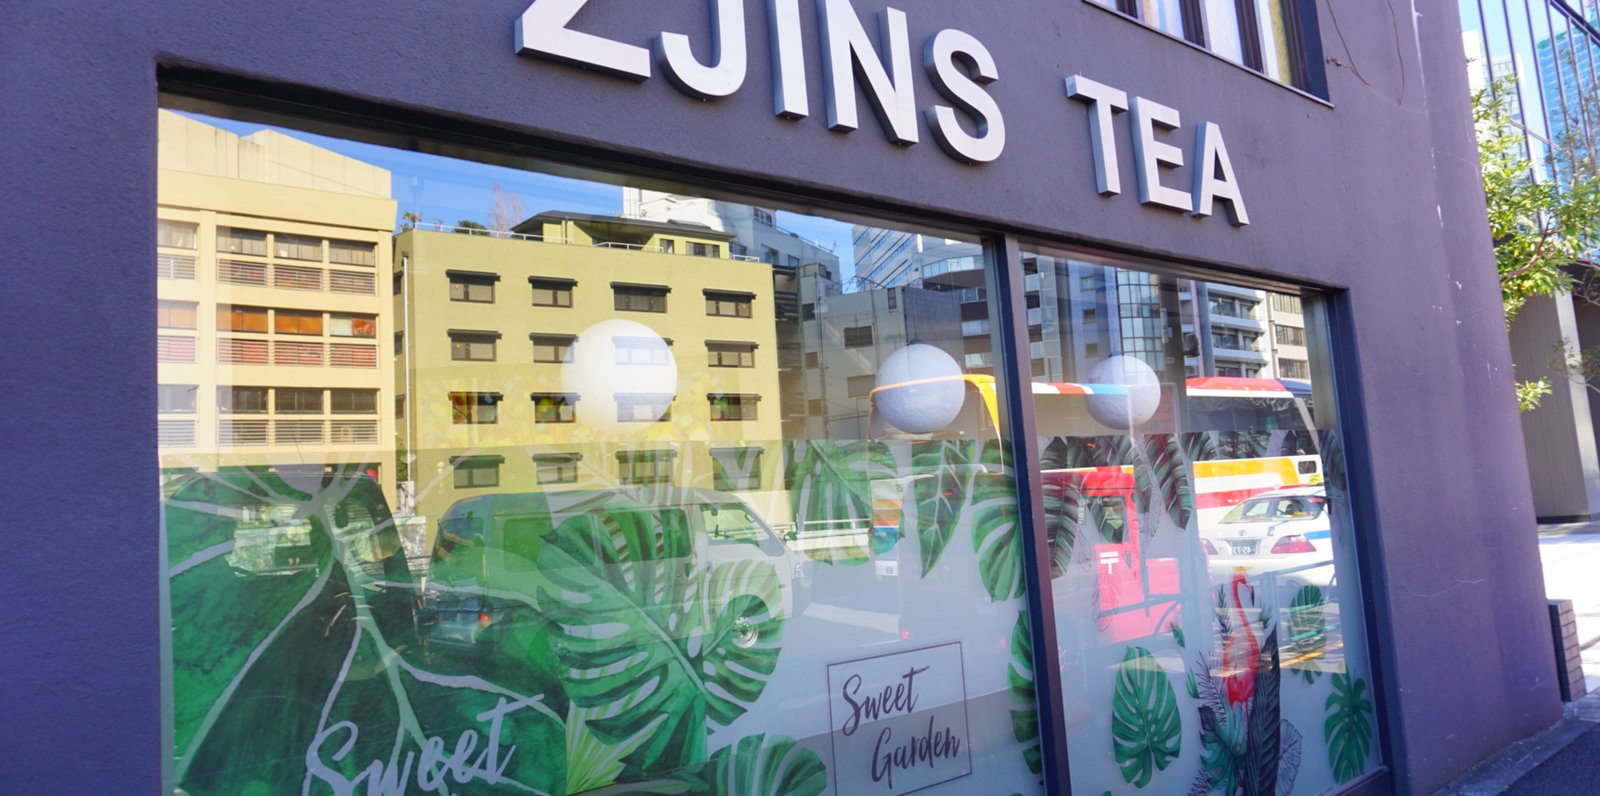 瑾茶 Zjins Tea（ジンスティー）